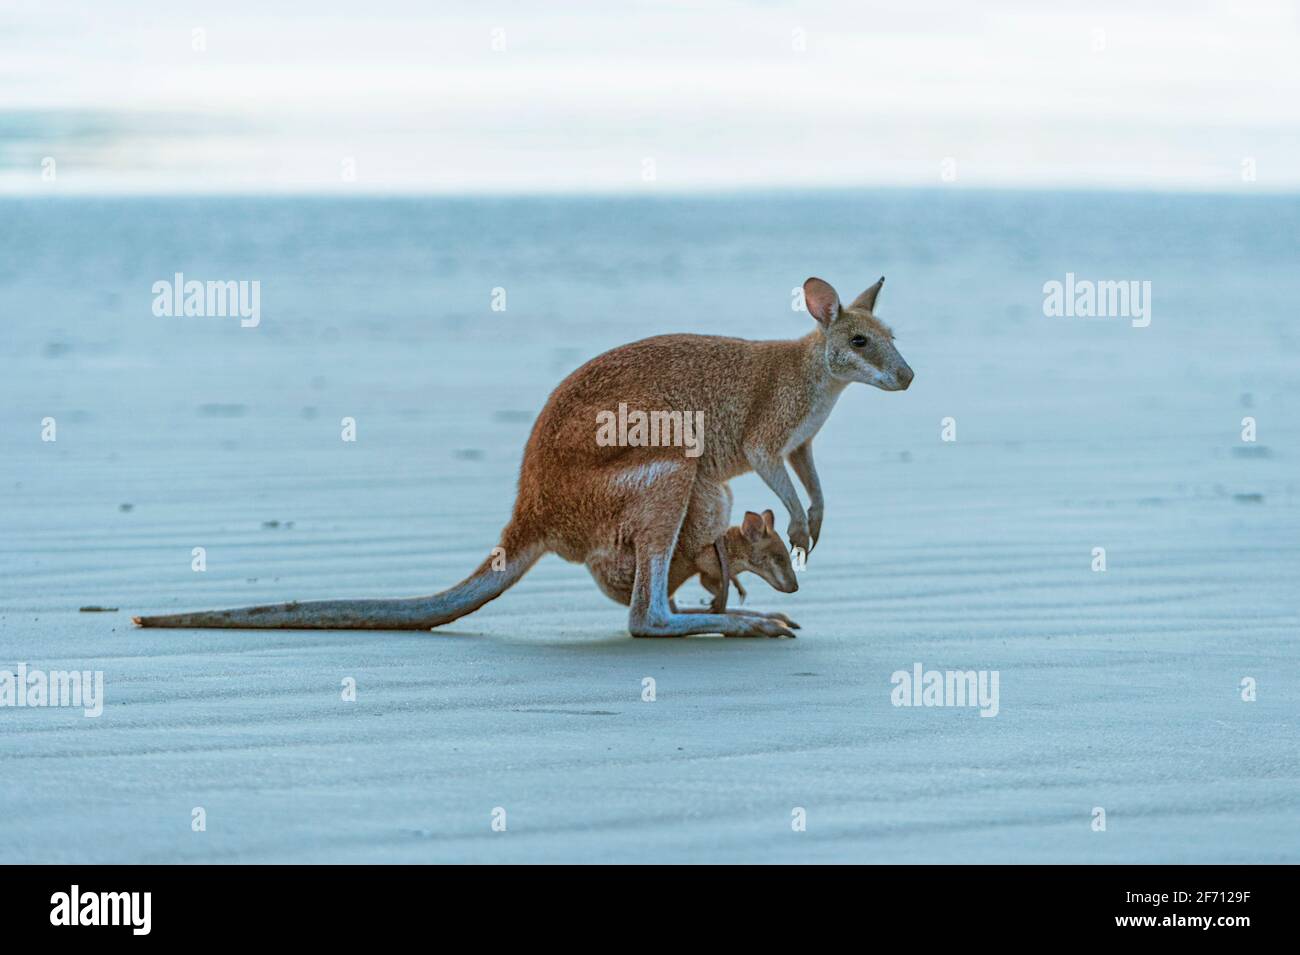 Weibliche Agile Wallaby (Macropus agilis), die mit einer joey in ihrem Beutel am Strand steht, Cape Hillsborough, Queensland, QLD, Australien Stockfoto